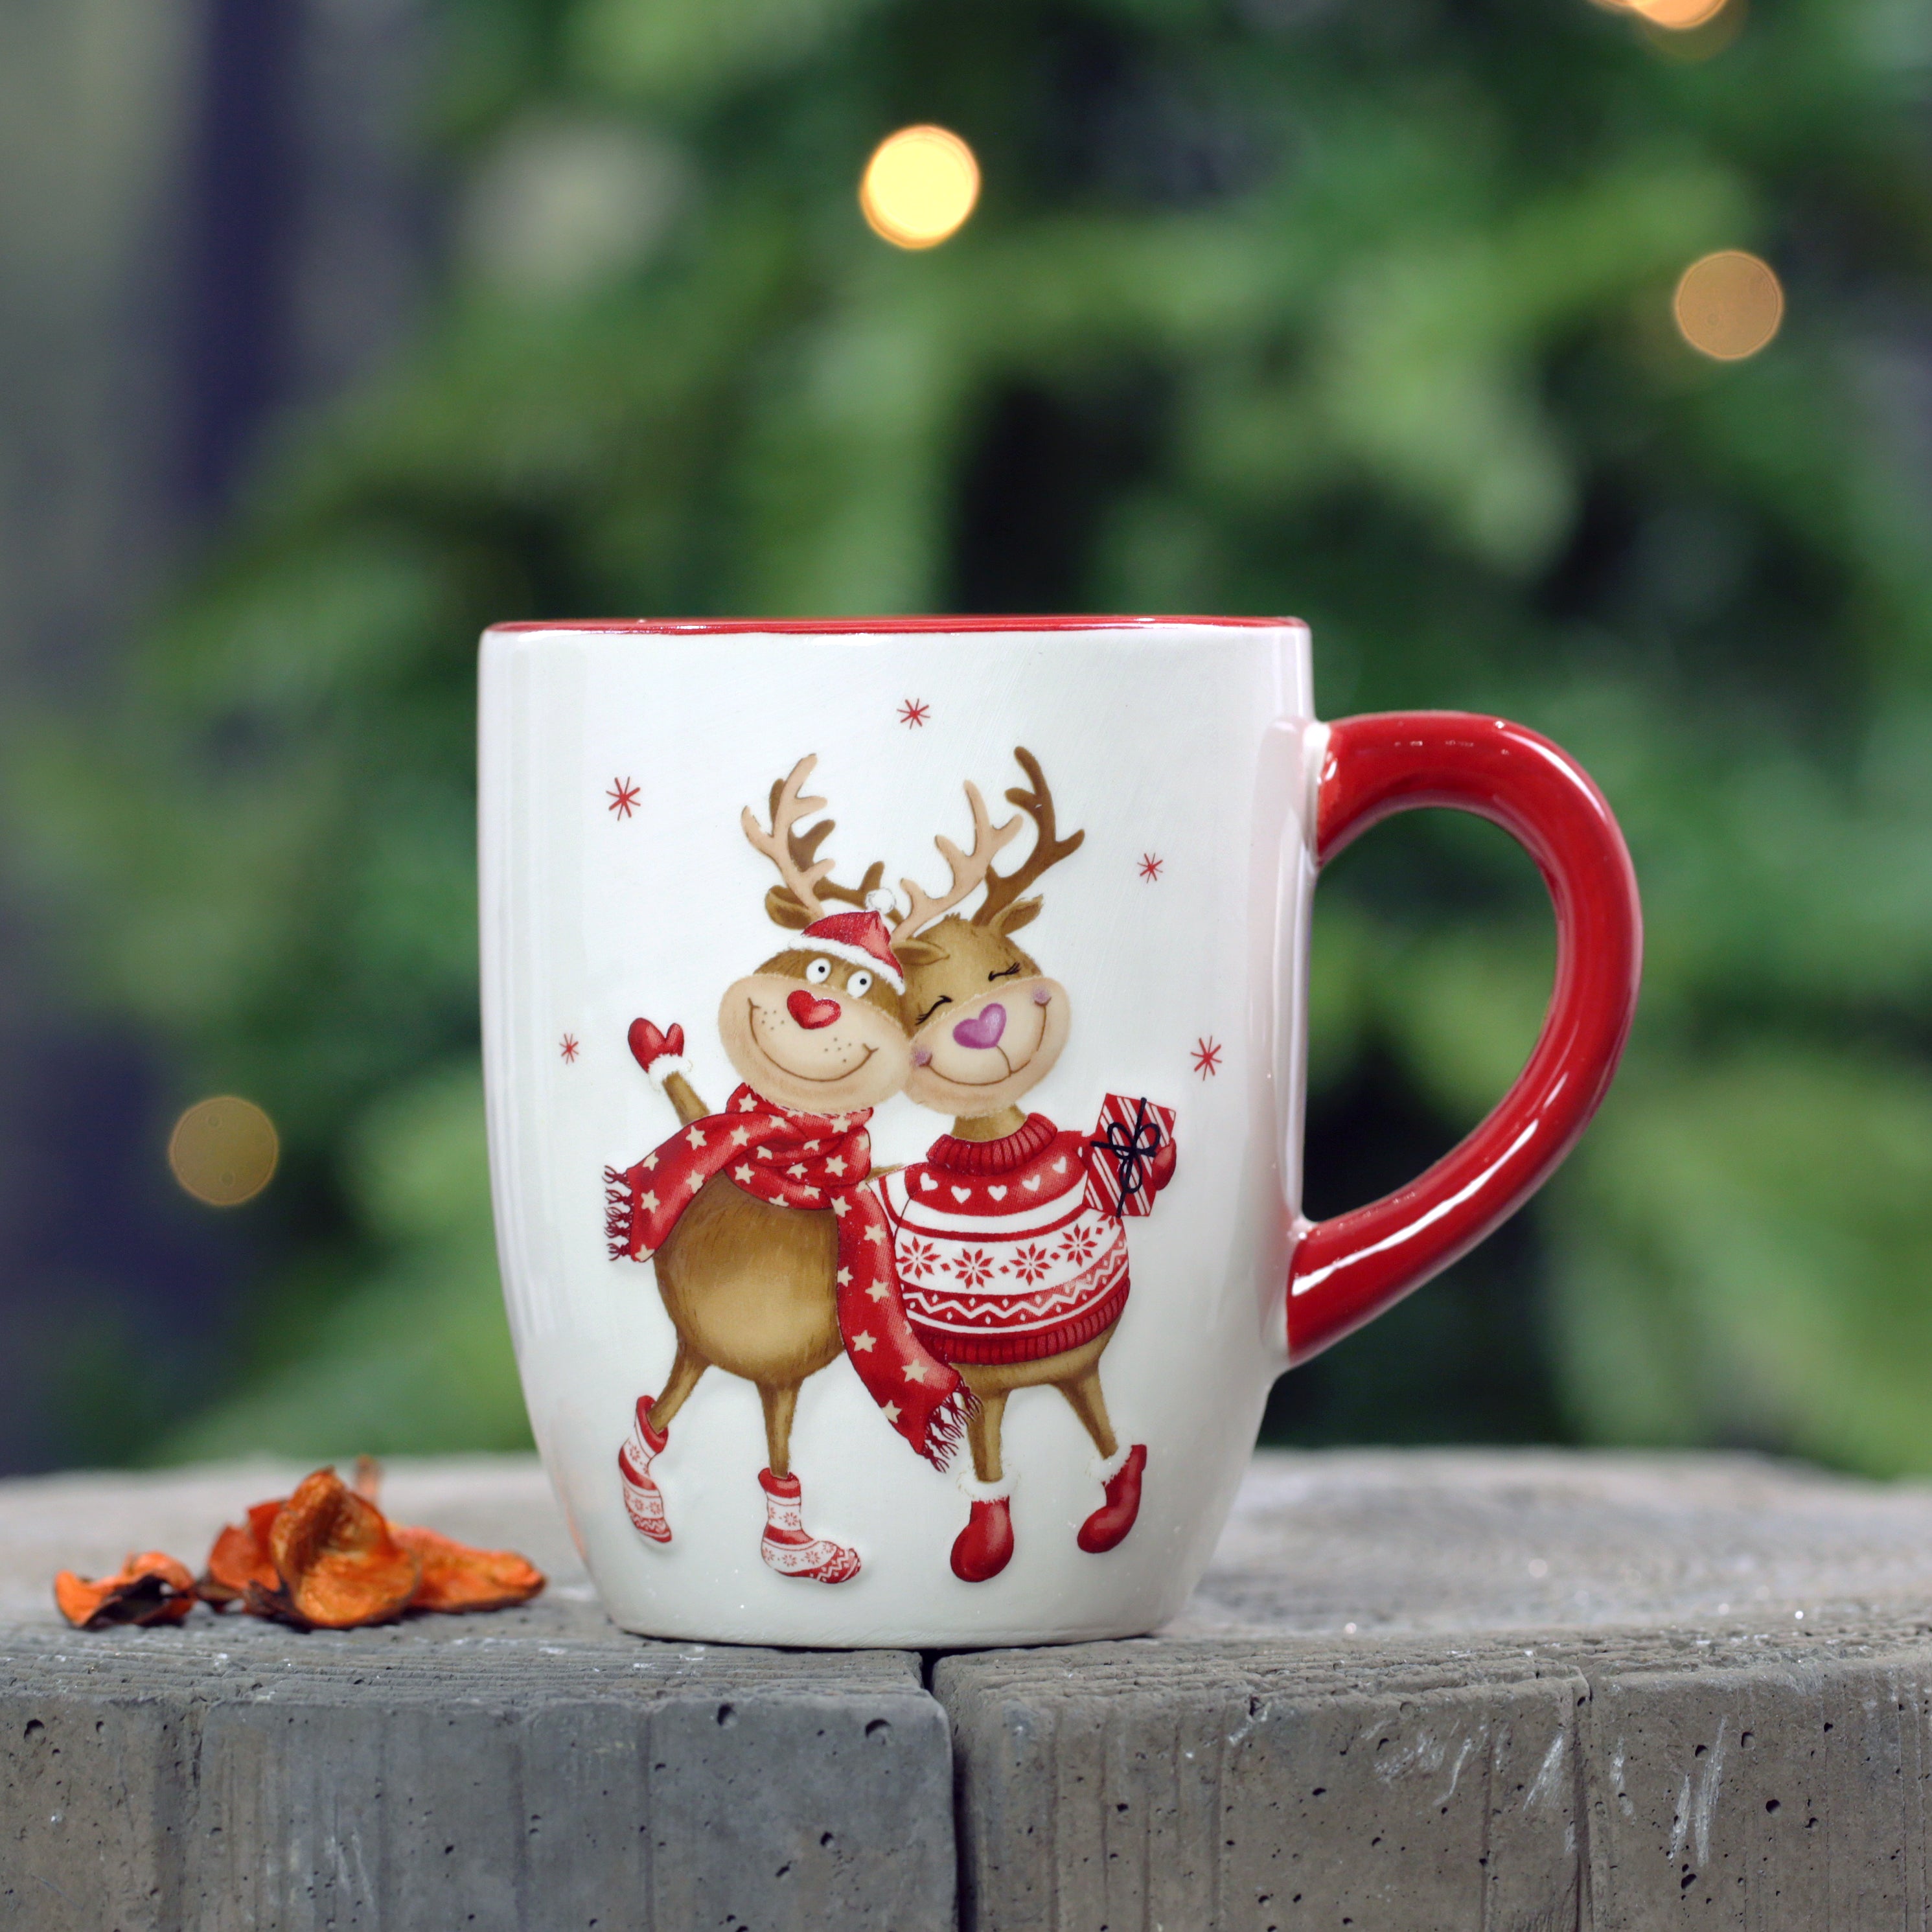 Christmas Reindeer Mugs and platter